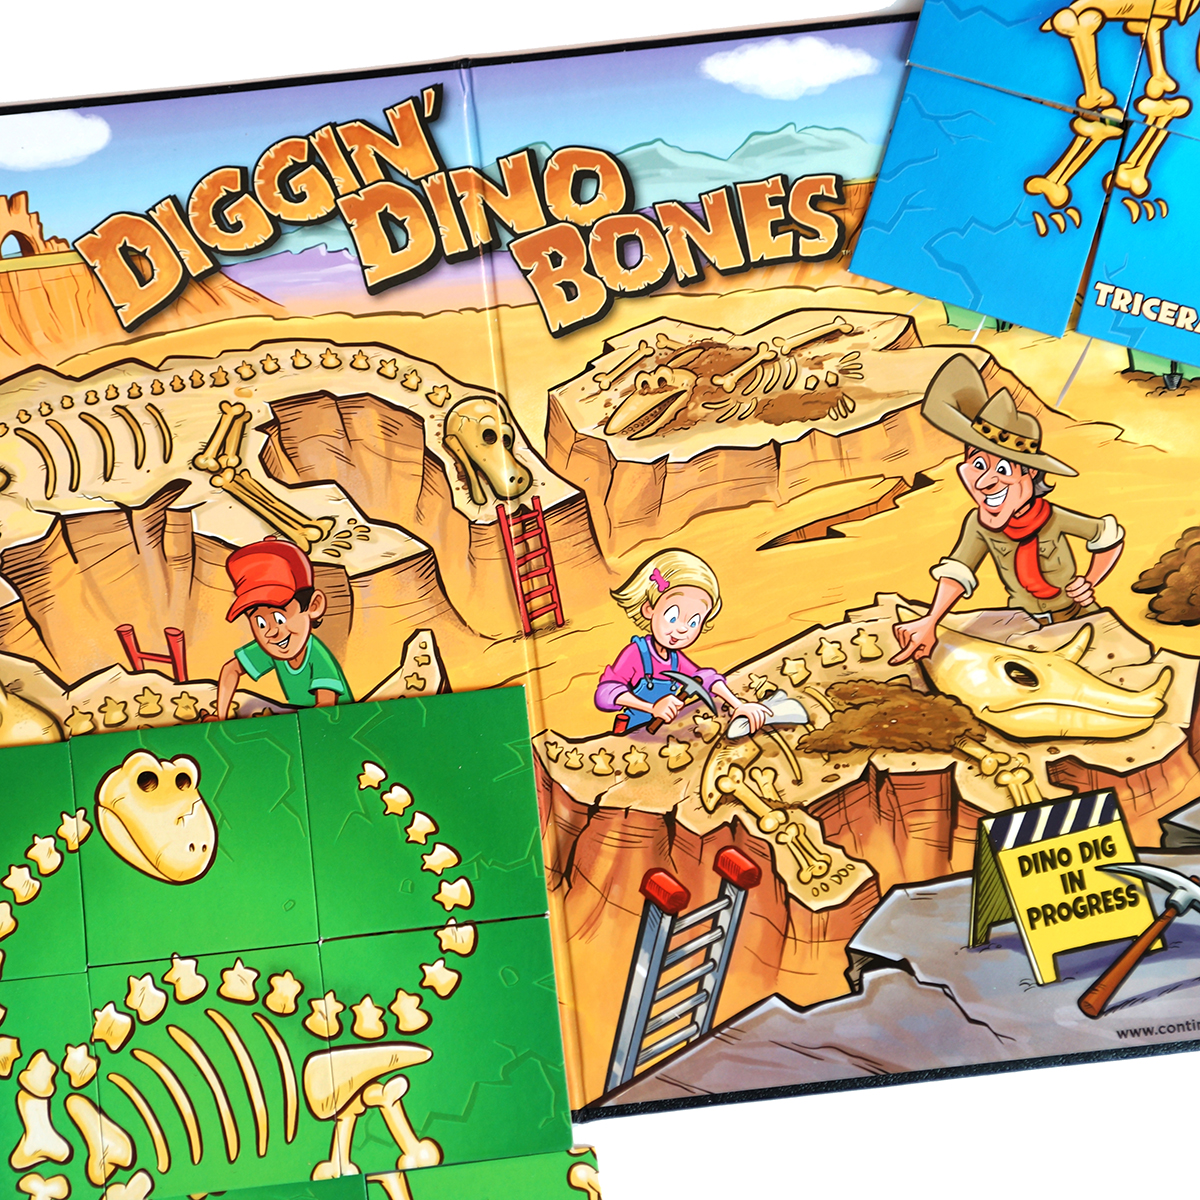 Continuum Games Diggin' Dino Bones